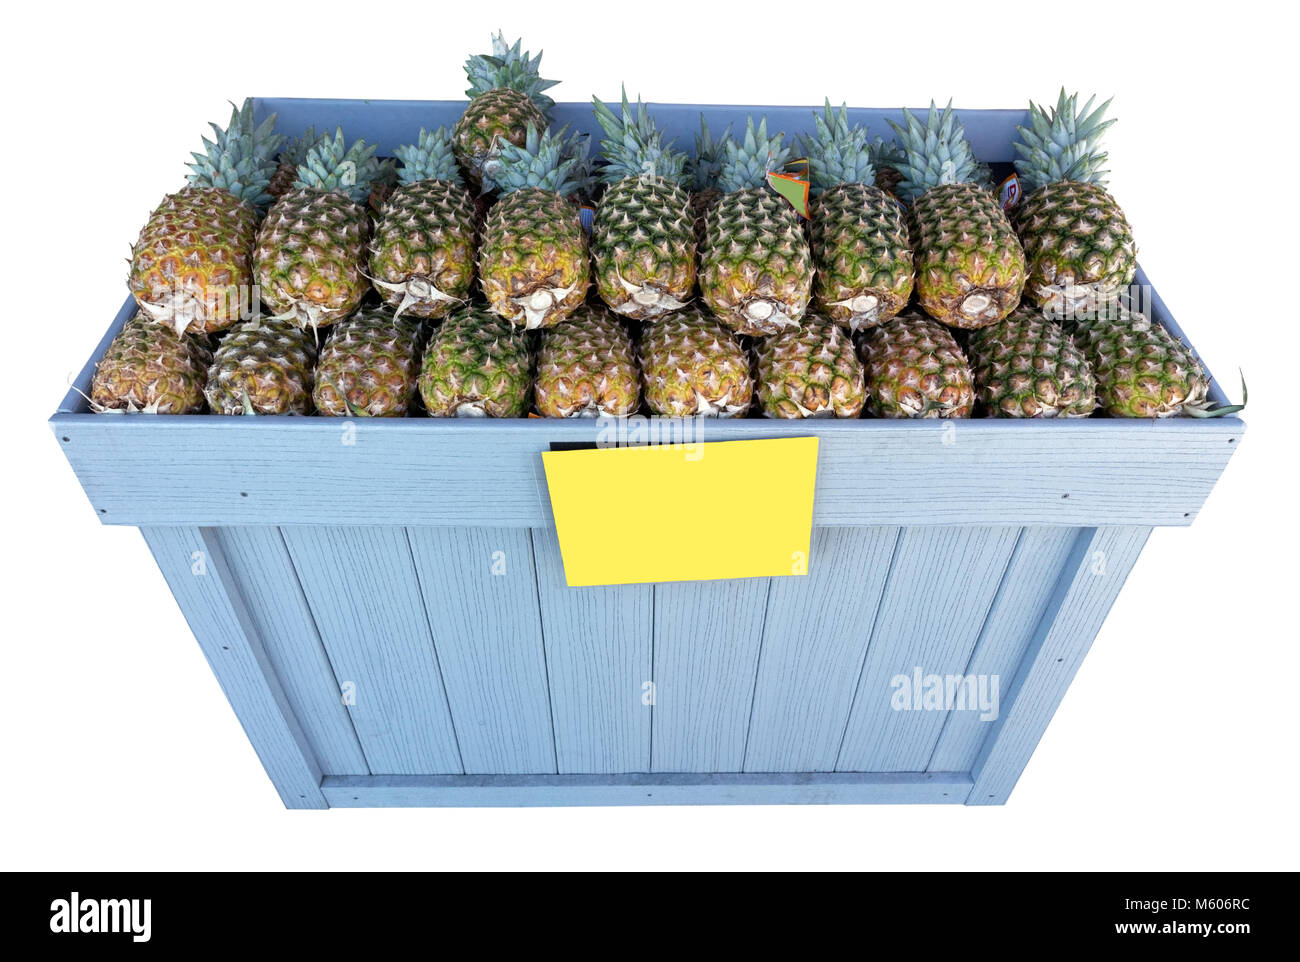 Stand de fruits trottoir bin rempli d'ananas frais. Isolées. Banque D'Images